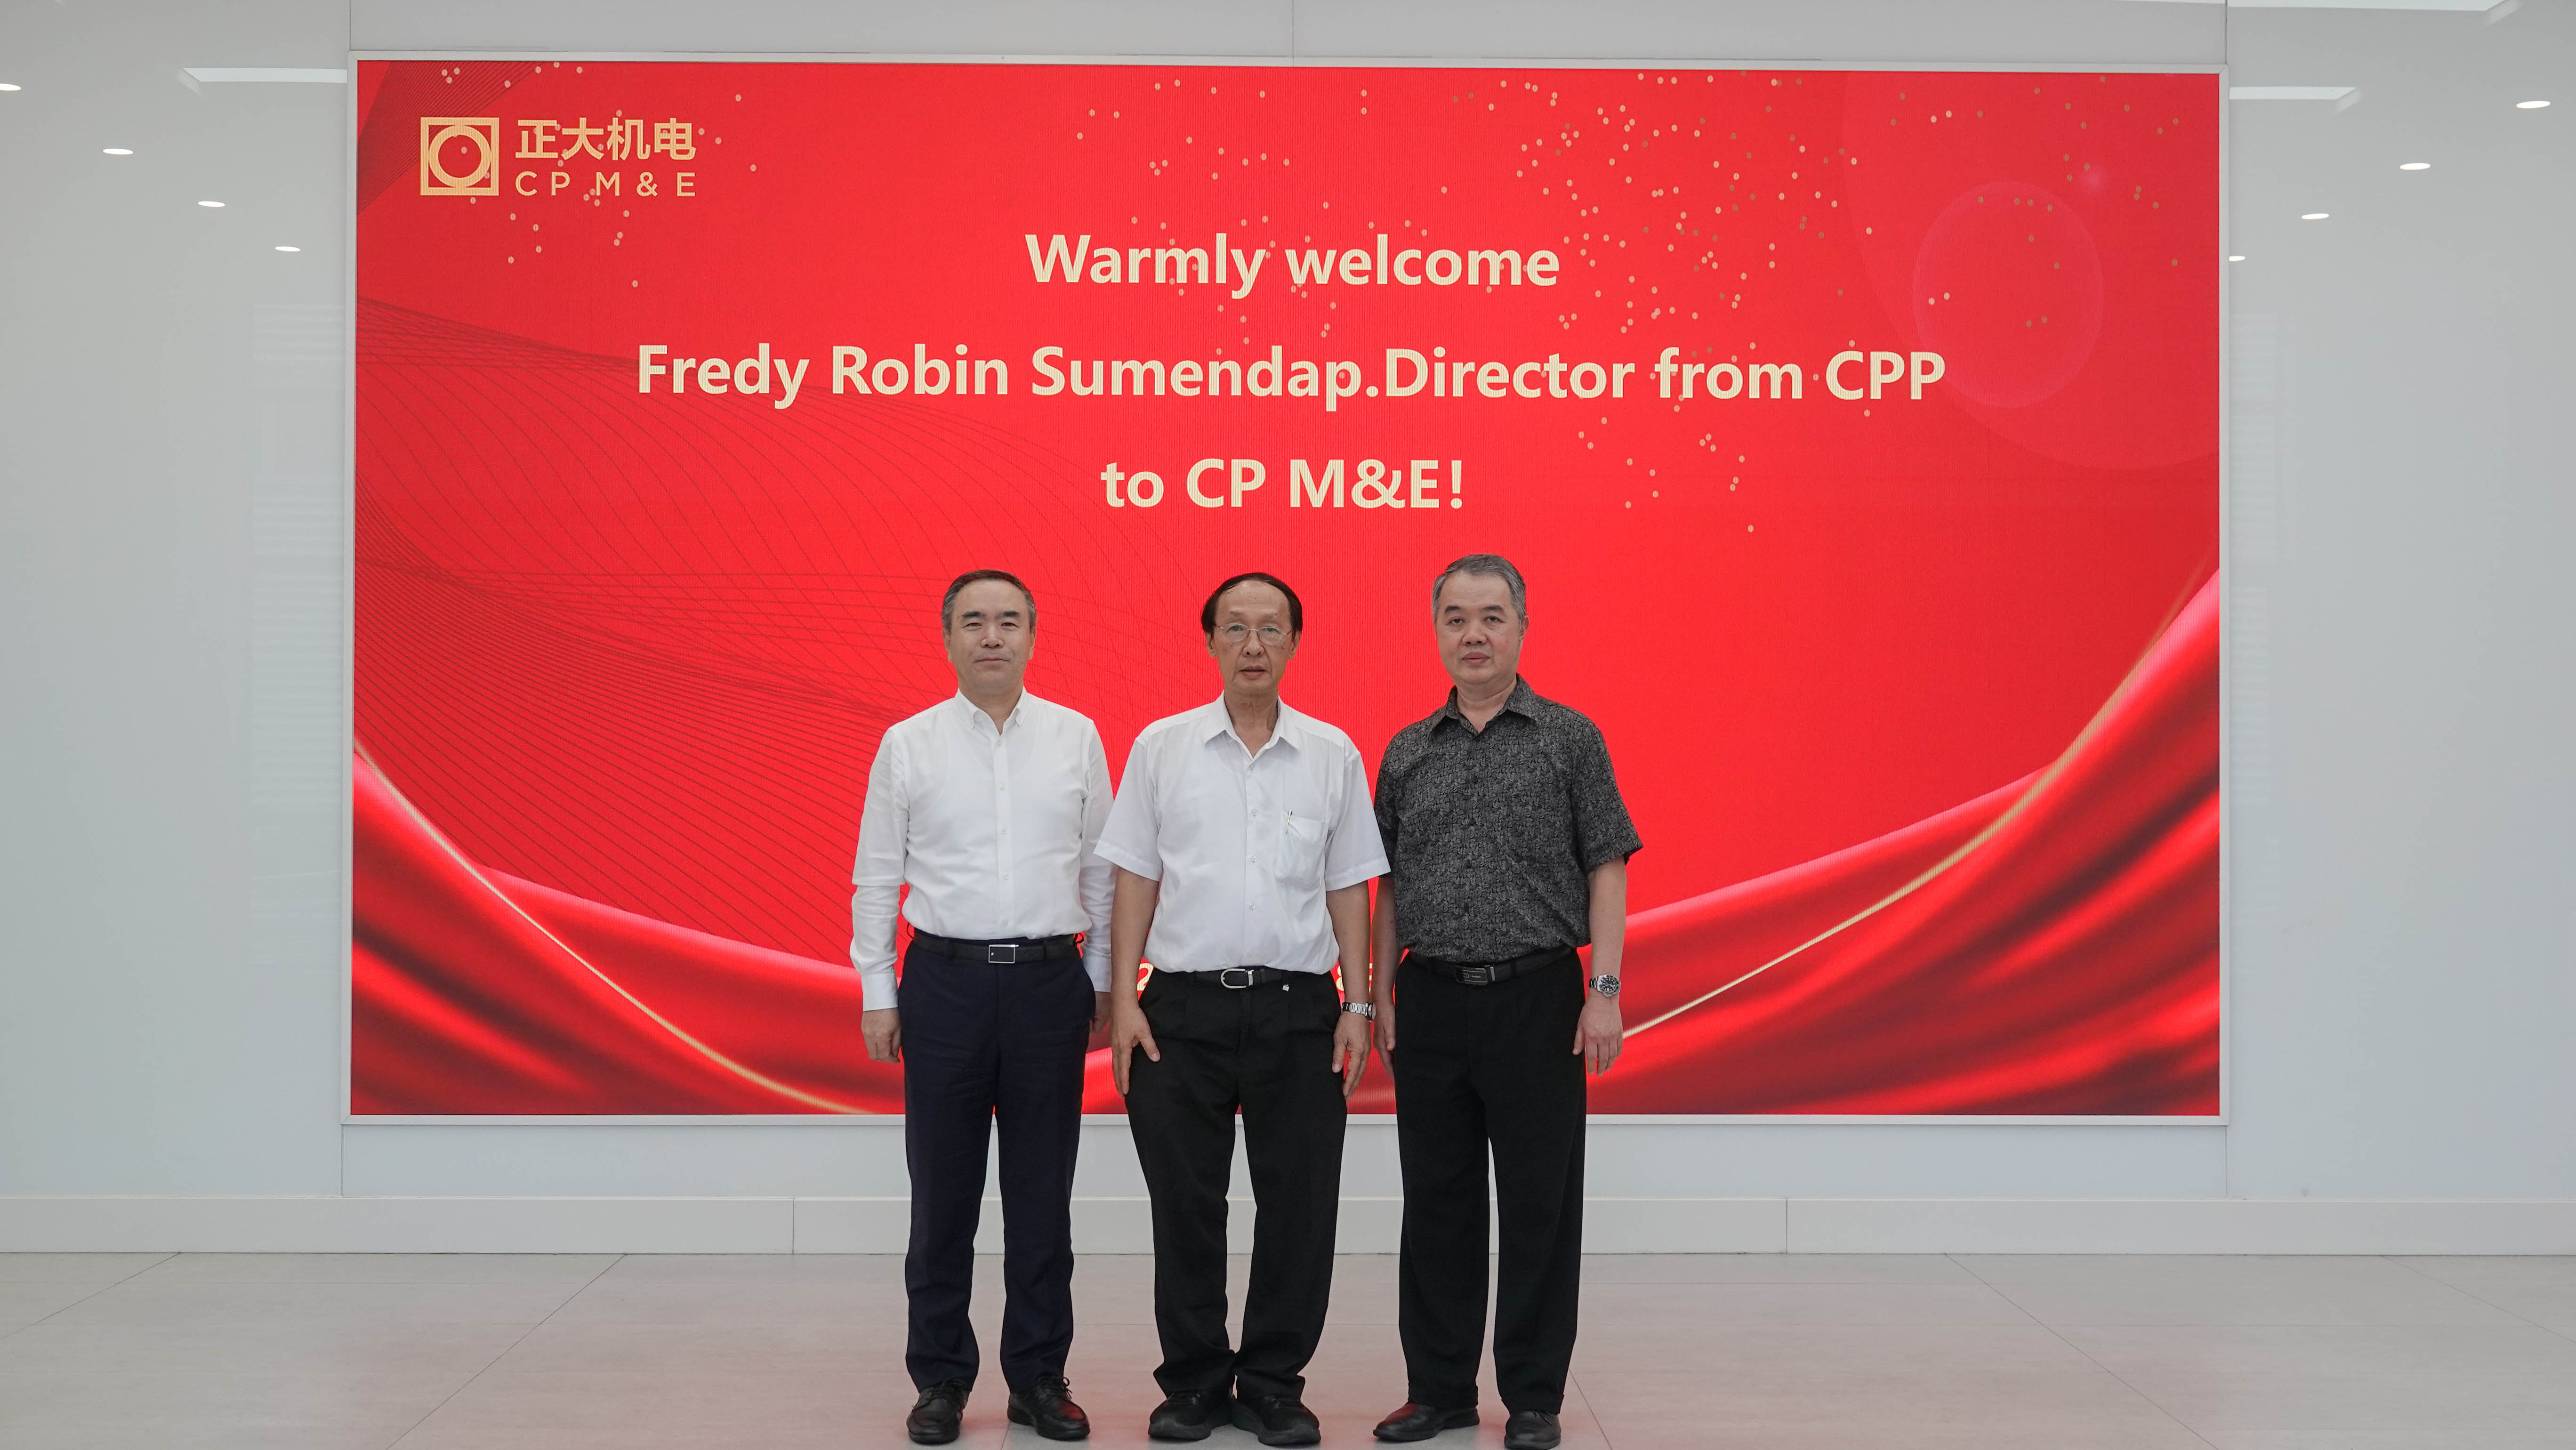 印尼CP PRIMA公司董事Mr. Fredy Robin Sumendap到访上海正宜参观交流